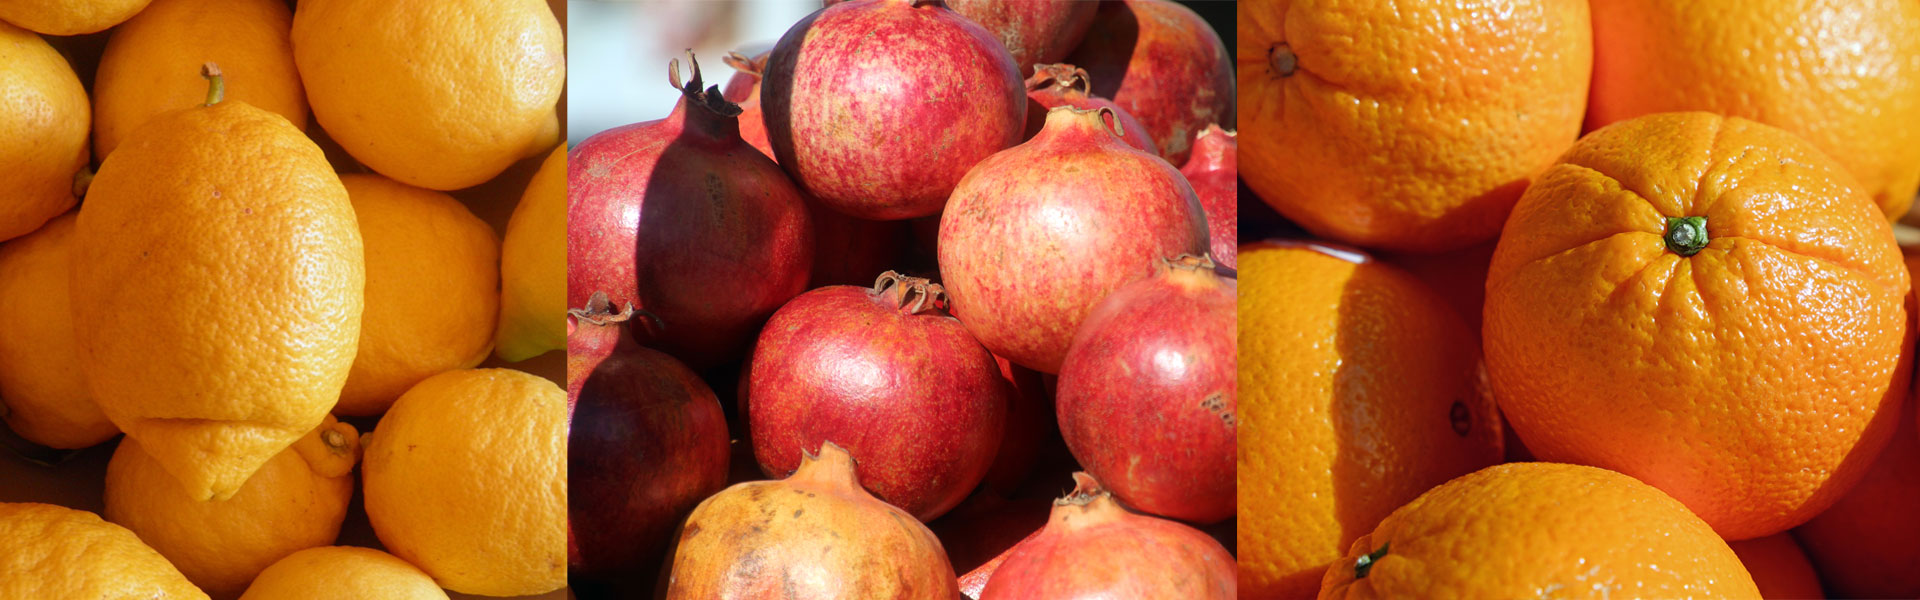 Zitrusfrüchte und Granatäpfel im Laden